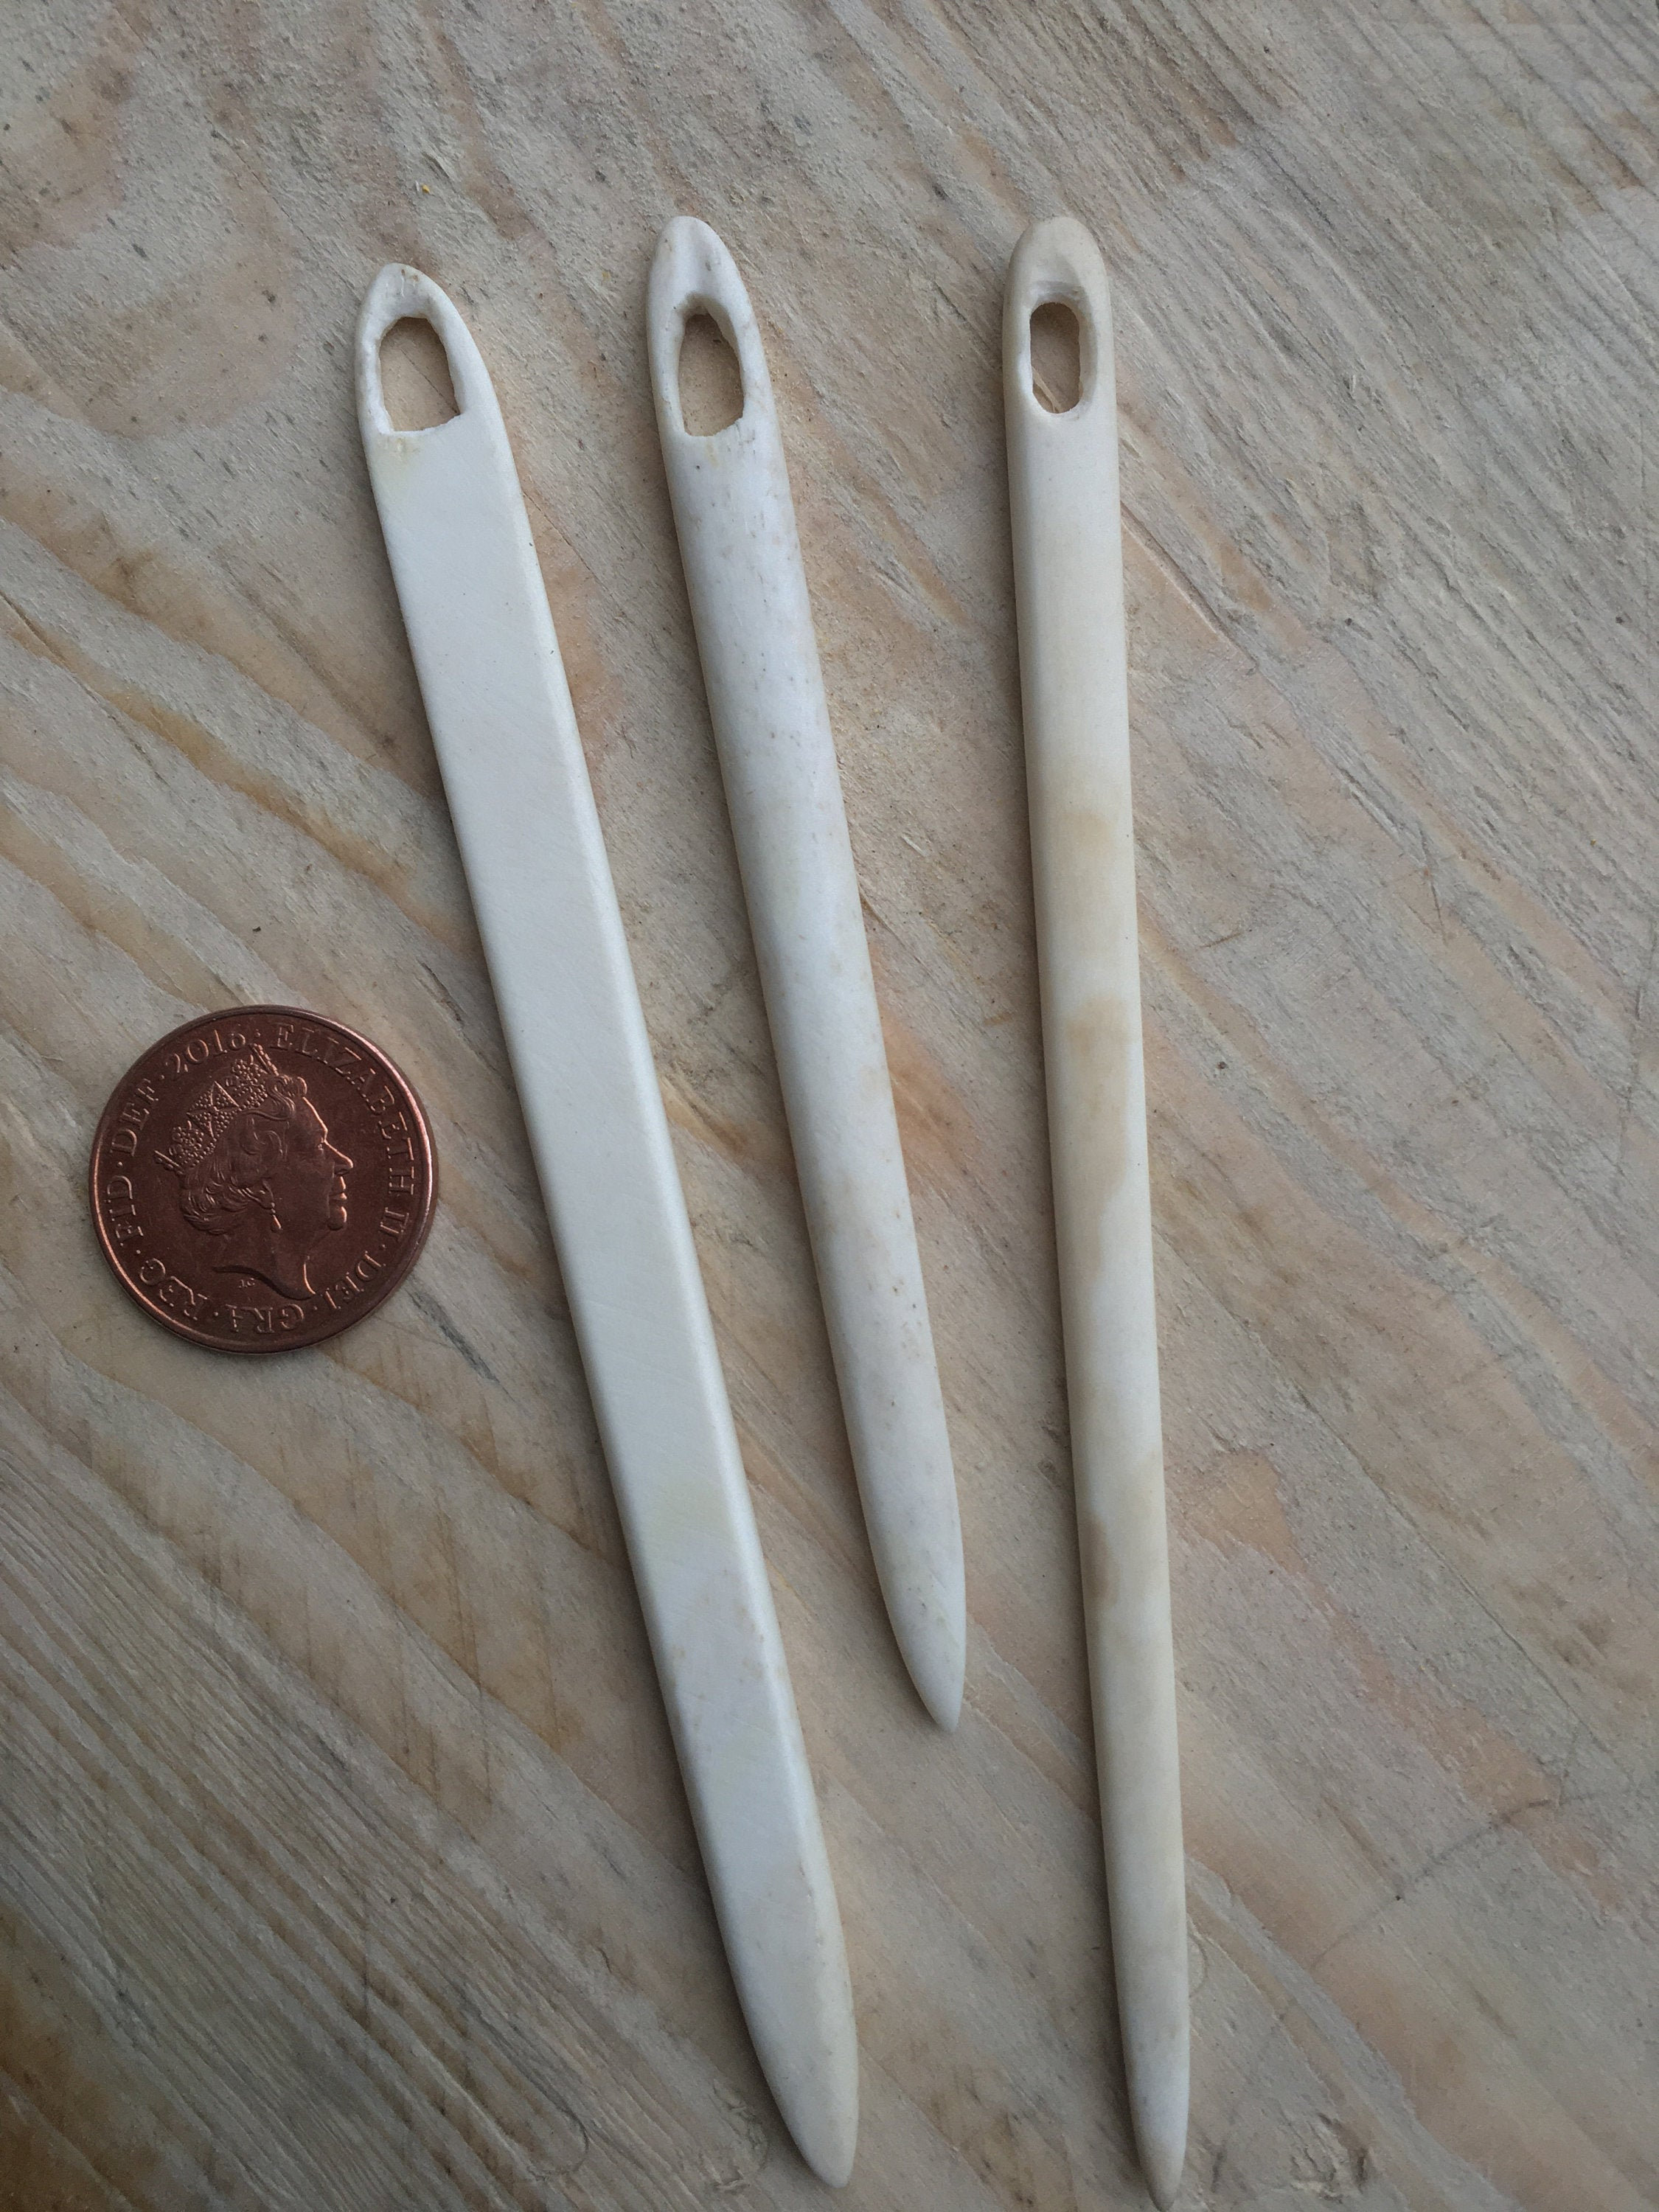 Knitting Needle / Large Sewing Needle from Bone for Nålebinding